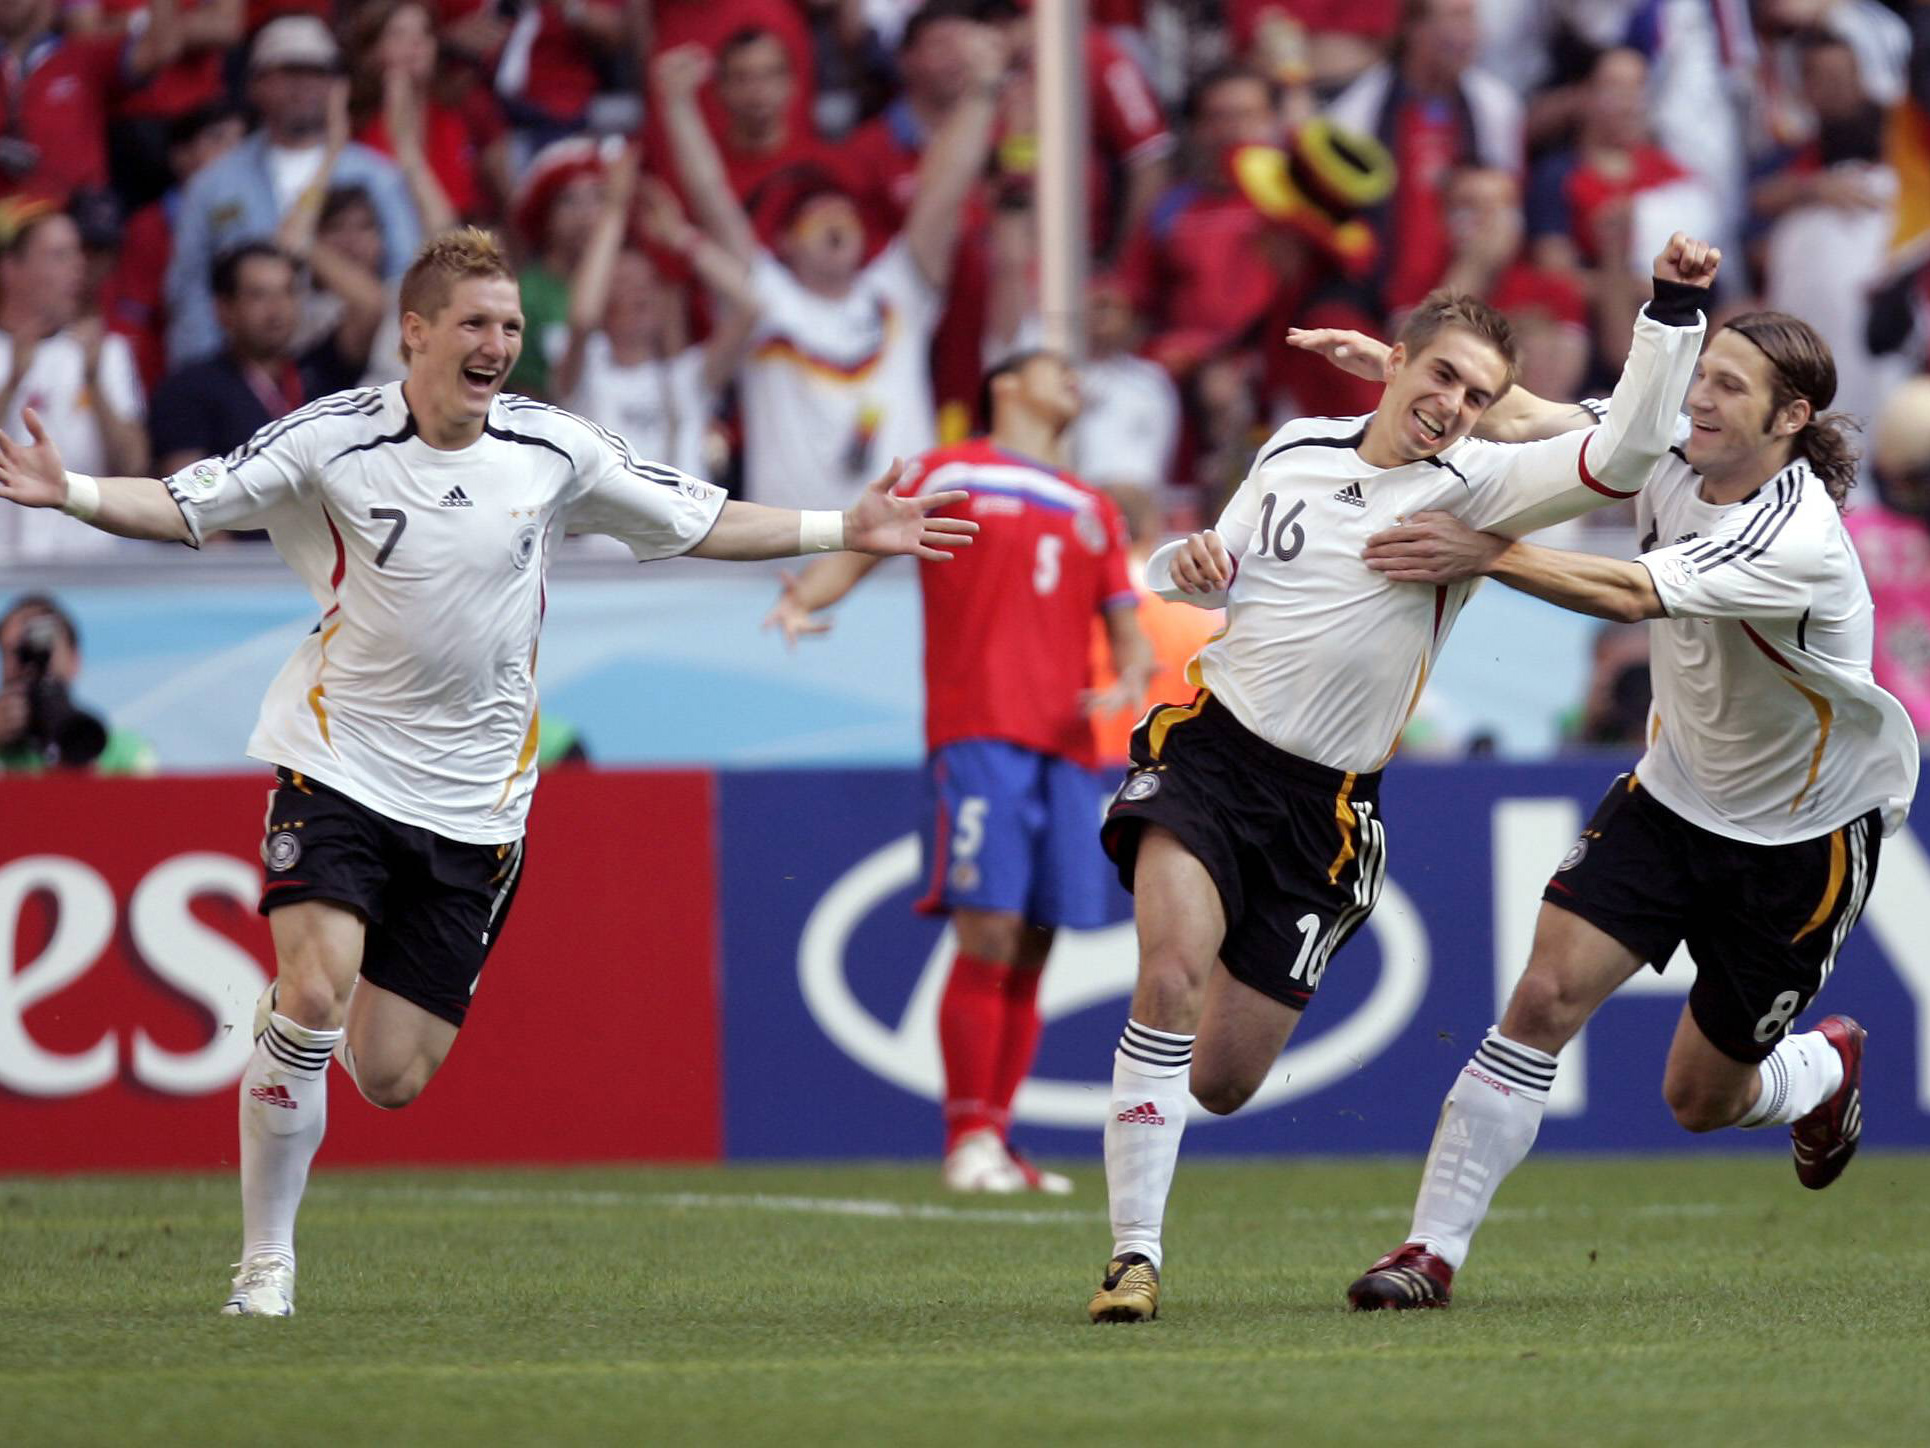 In 2005 speelt Lahm door een aantal blessures geen enkele interland. Ook de Confederations Cup moet hij aan zich voorbij laten gaan. Op 1 maart 2006 maakt hij - na veertien maanden afwezigheid - tegen Italië zijn rentree in de nationale ploeg. Lahm wordt door Jürgen Klinsmann geselecteerd voor het WK in eigen land, waar hij in het eerste groepsduel met Costa Rica (4-2 winst) met een fantastische goal de eerste treffer van het WK voor zijn rekening neemt. Duitsland verliest uiteindelijk in de halve finale van Italië, maar sluit het toernooi als derde af.